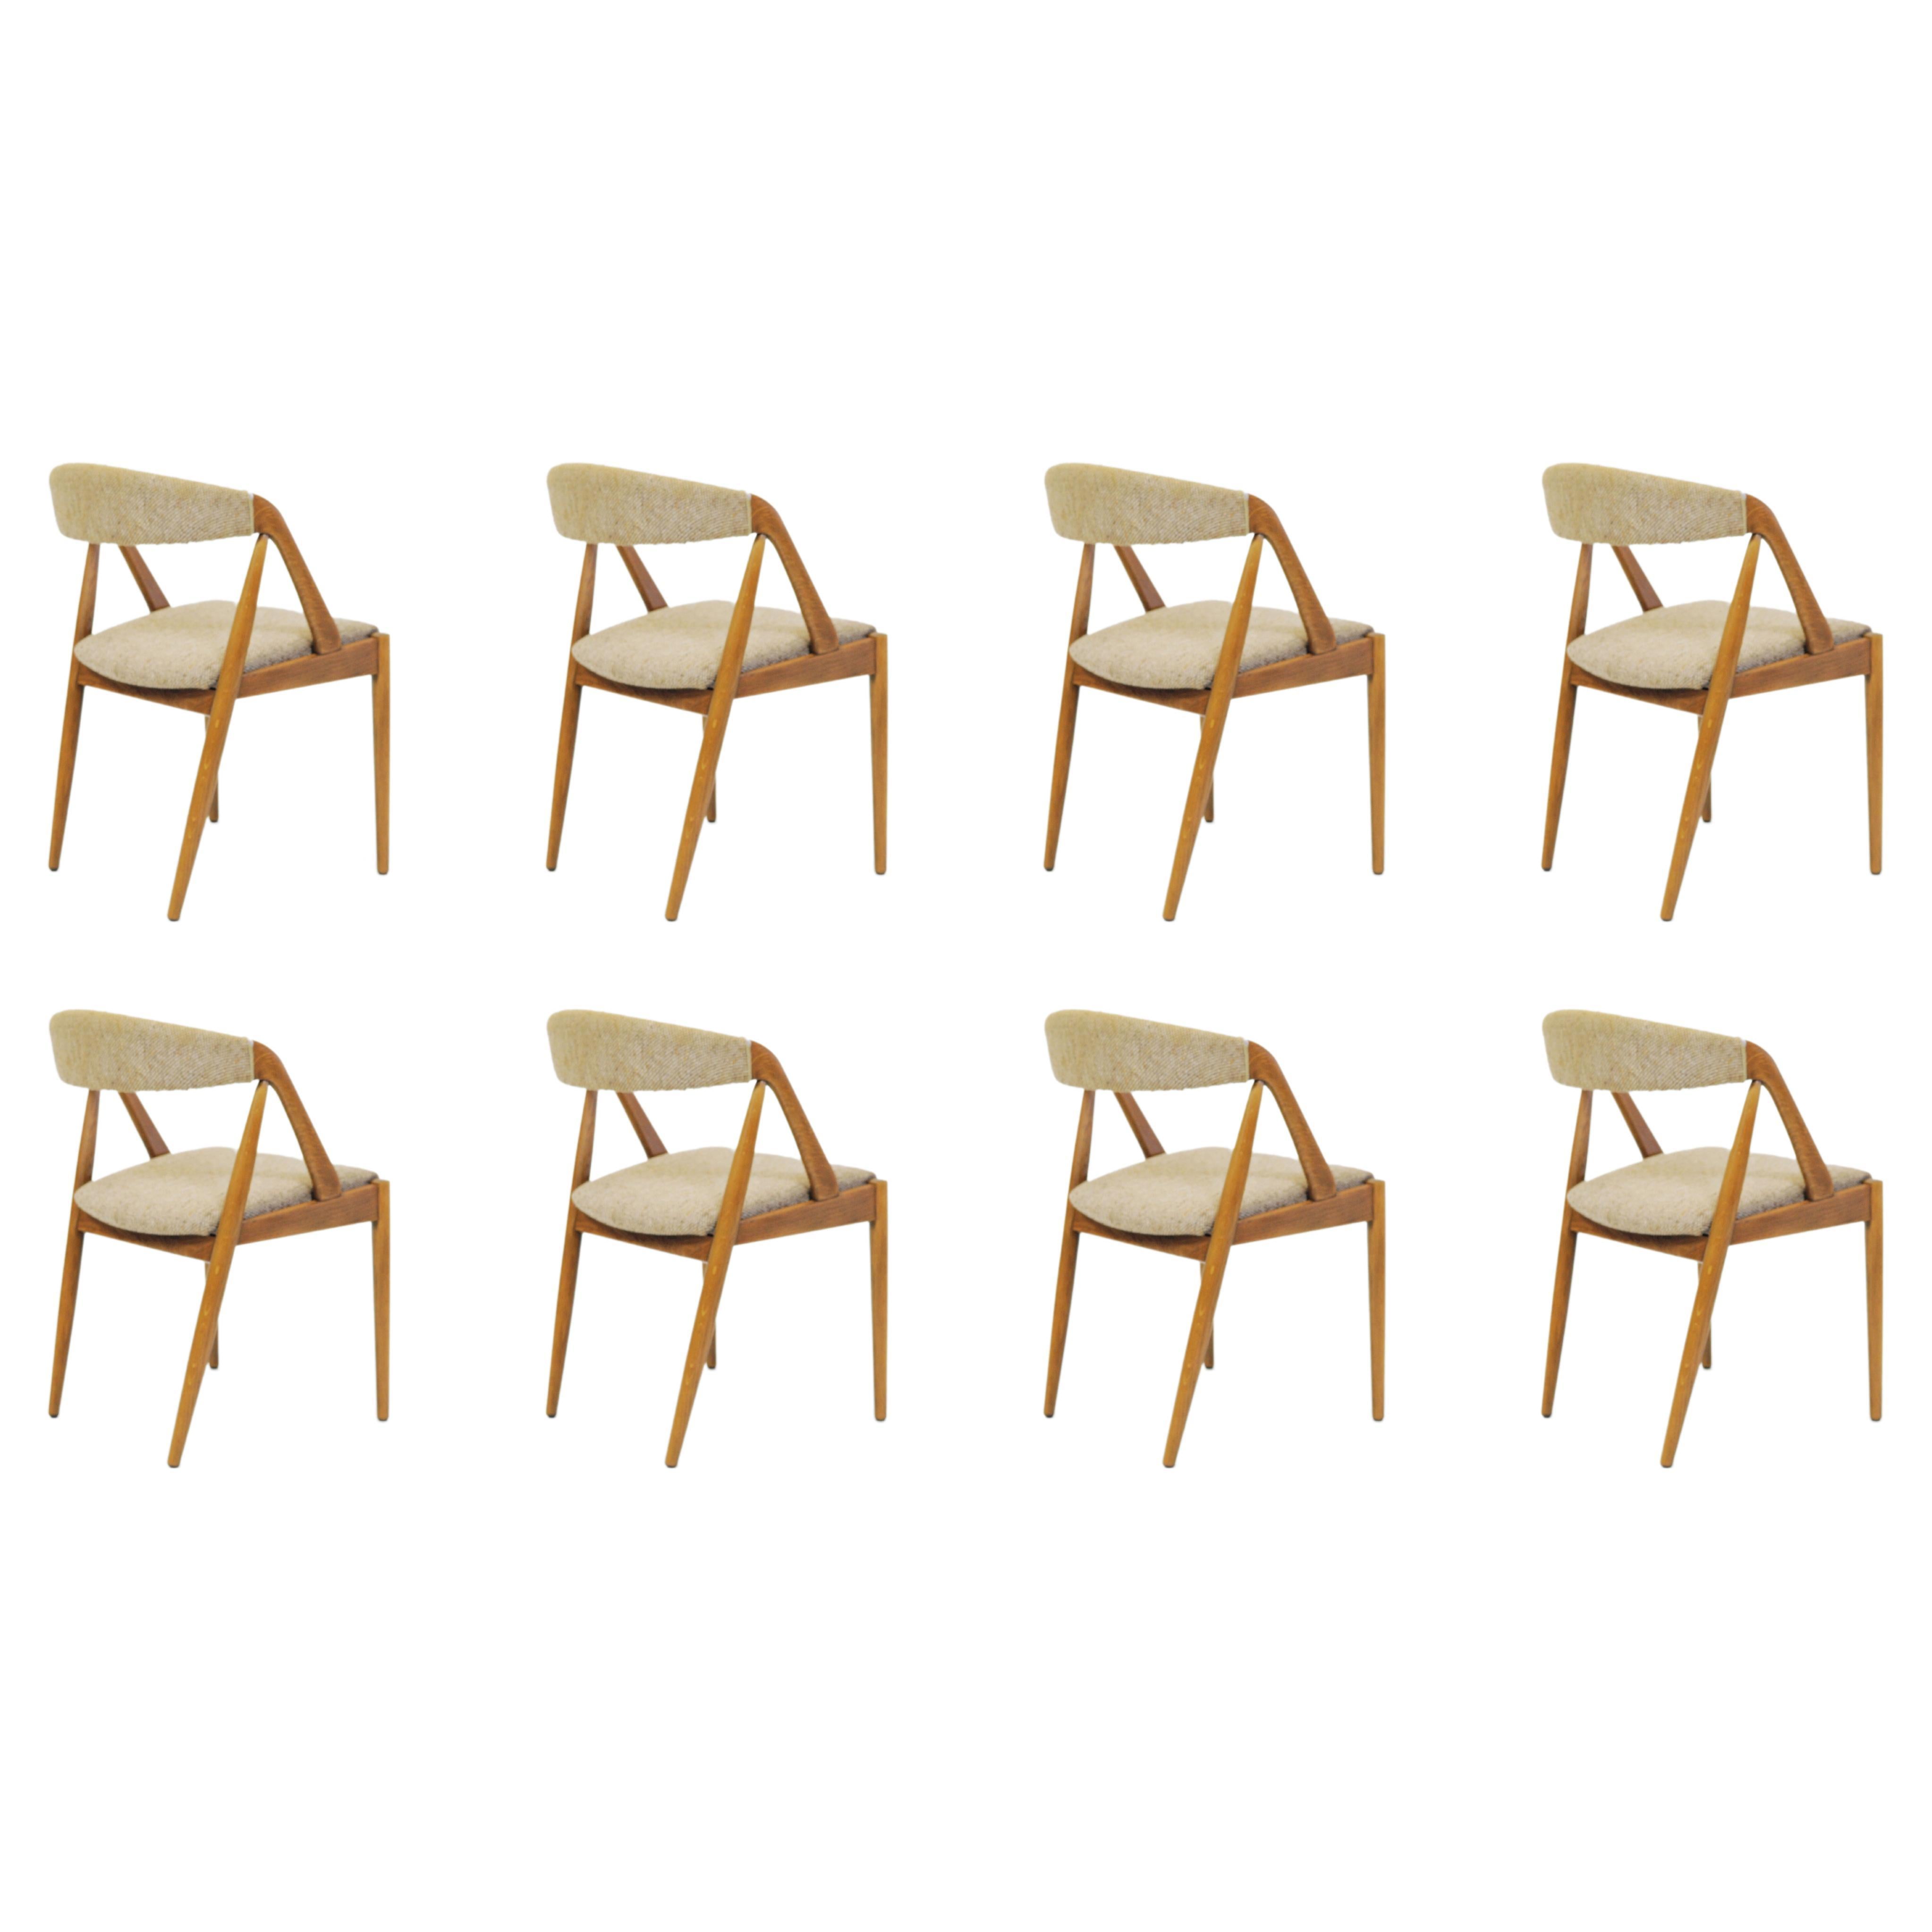 Huit chaises de salle à manger Kai Kristiansen restaurées, retapissées sur mesure, incluses